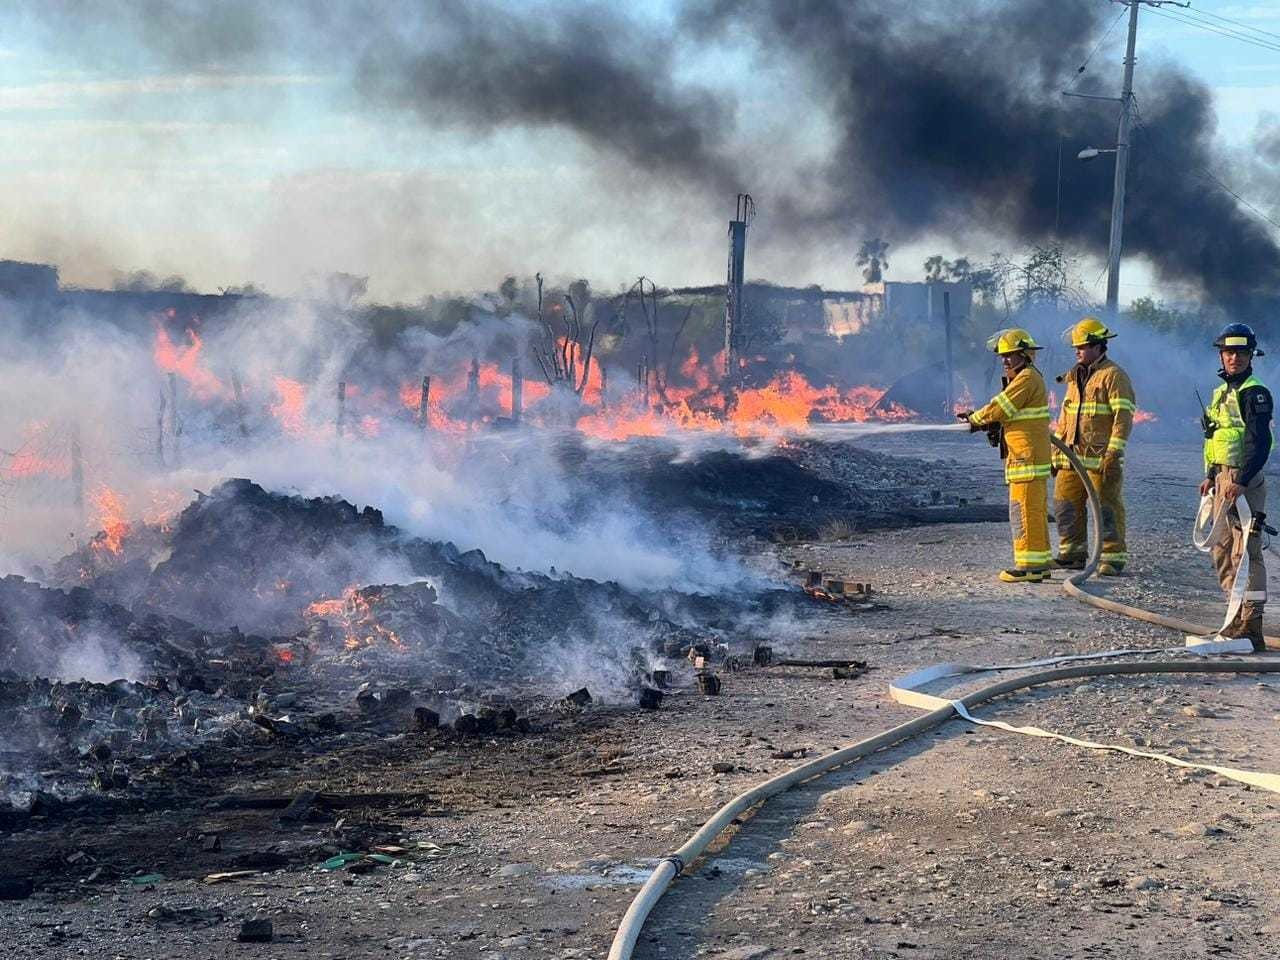 Afortunadamente, solo se presentó la quema de pastizales y tarimas en la zona, sin causar daños a empresas o domicilios cercanos. Foto: Especial.